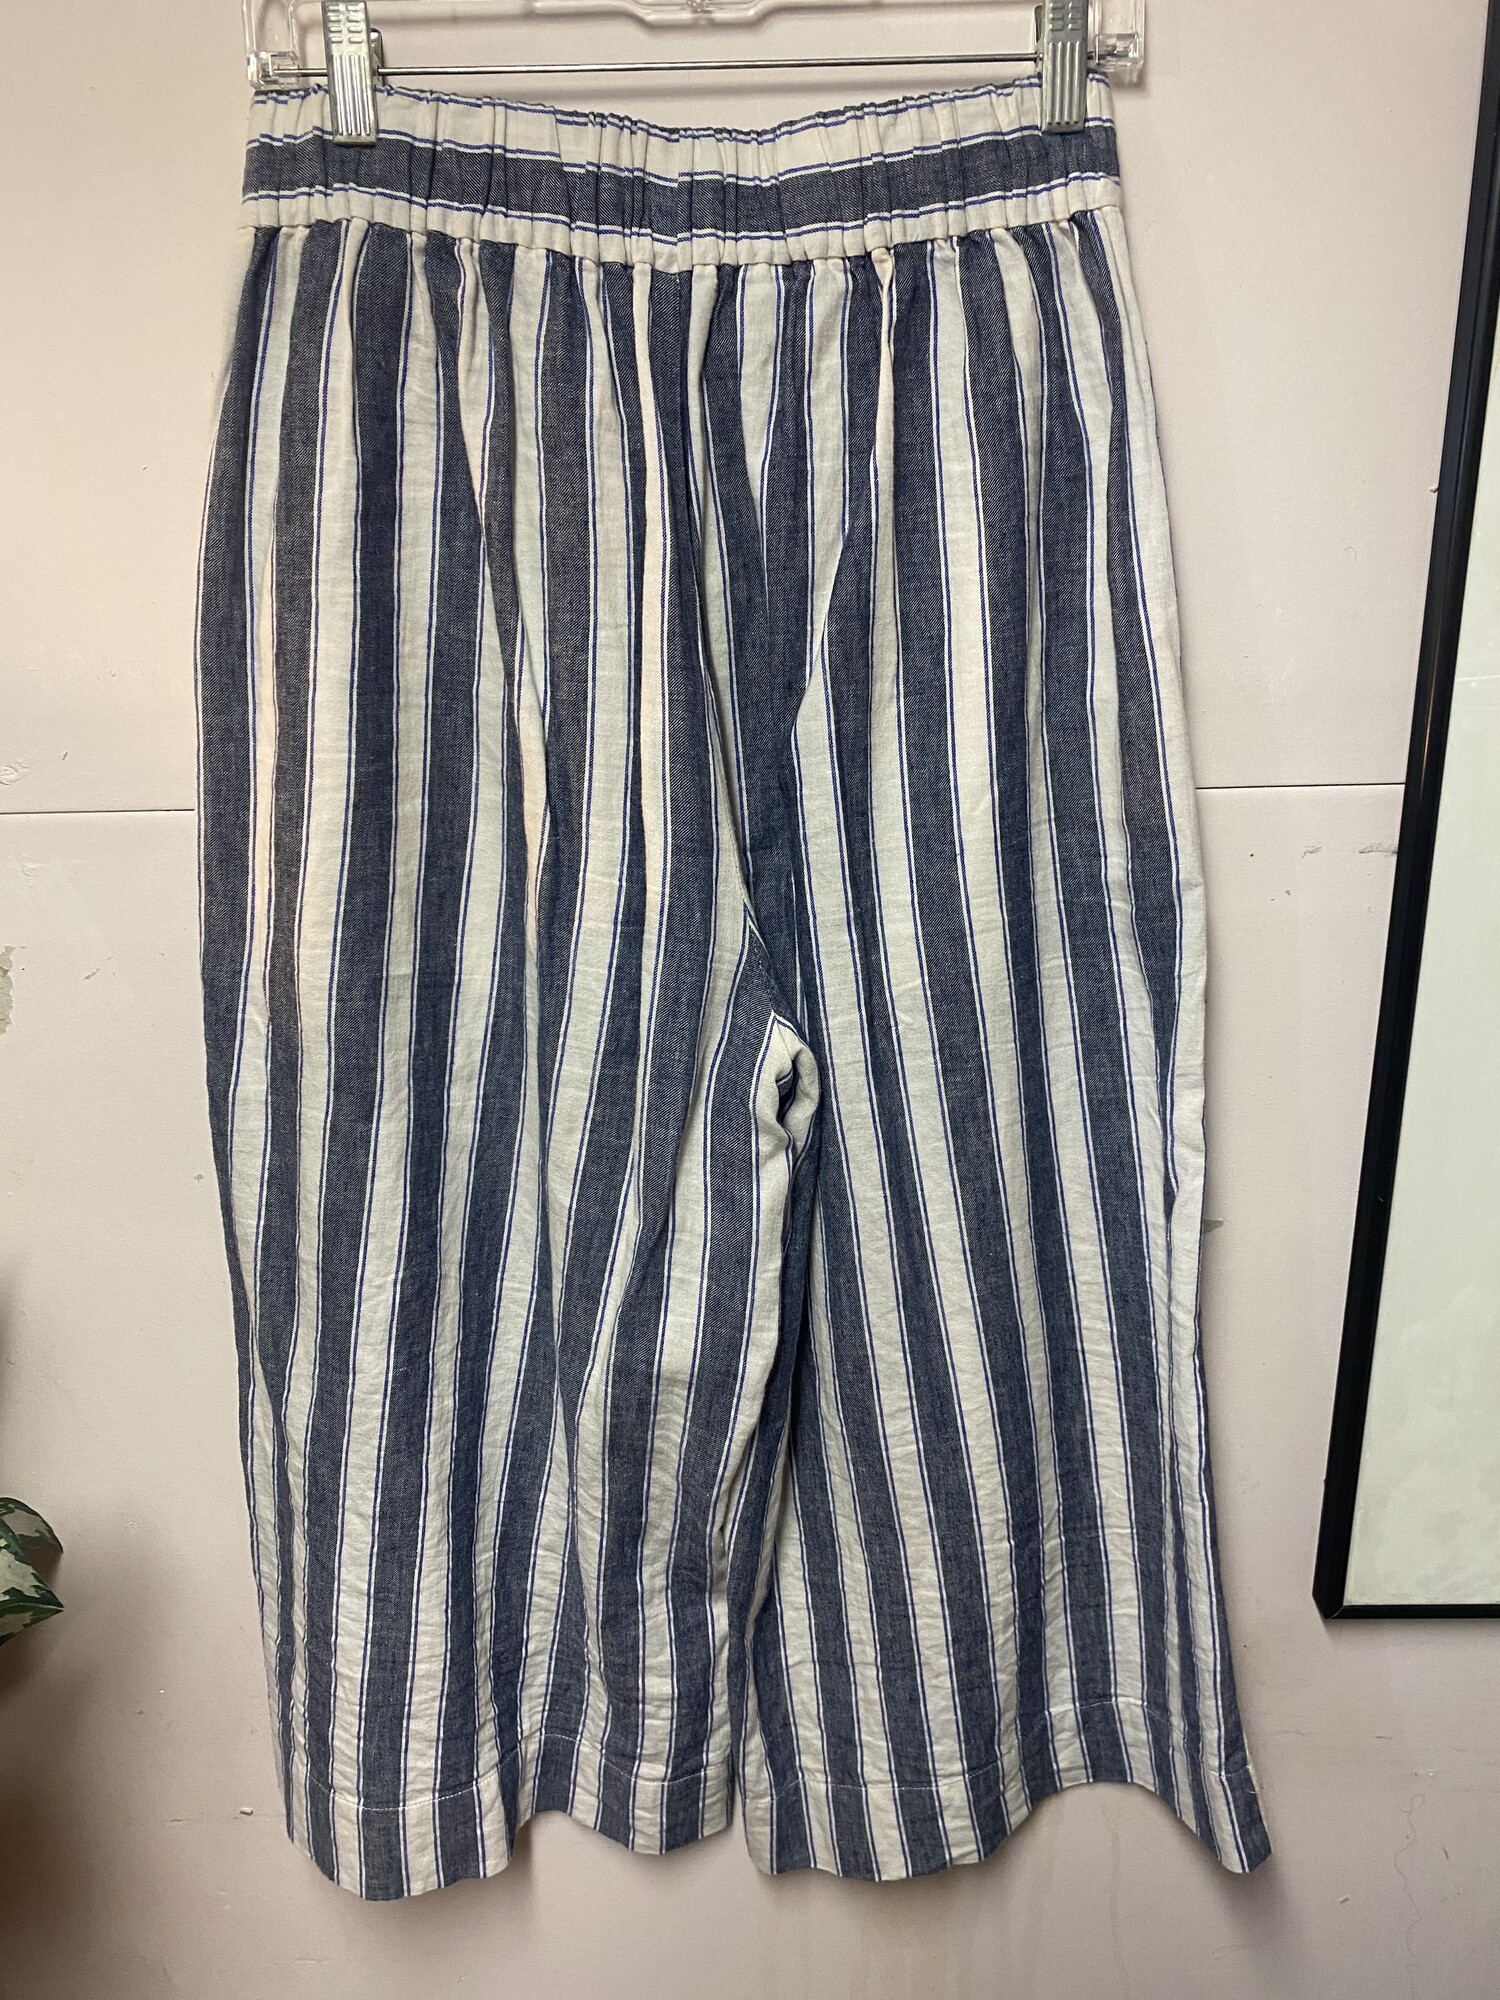 Pants Wide Leg Crop Strip, Blu/wht, Size: Sm